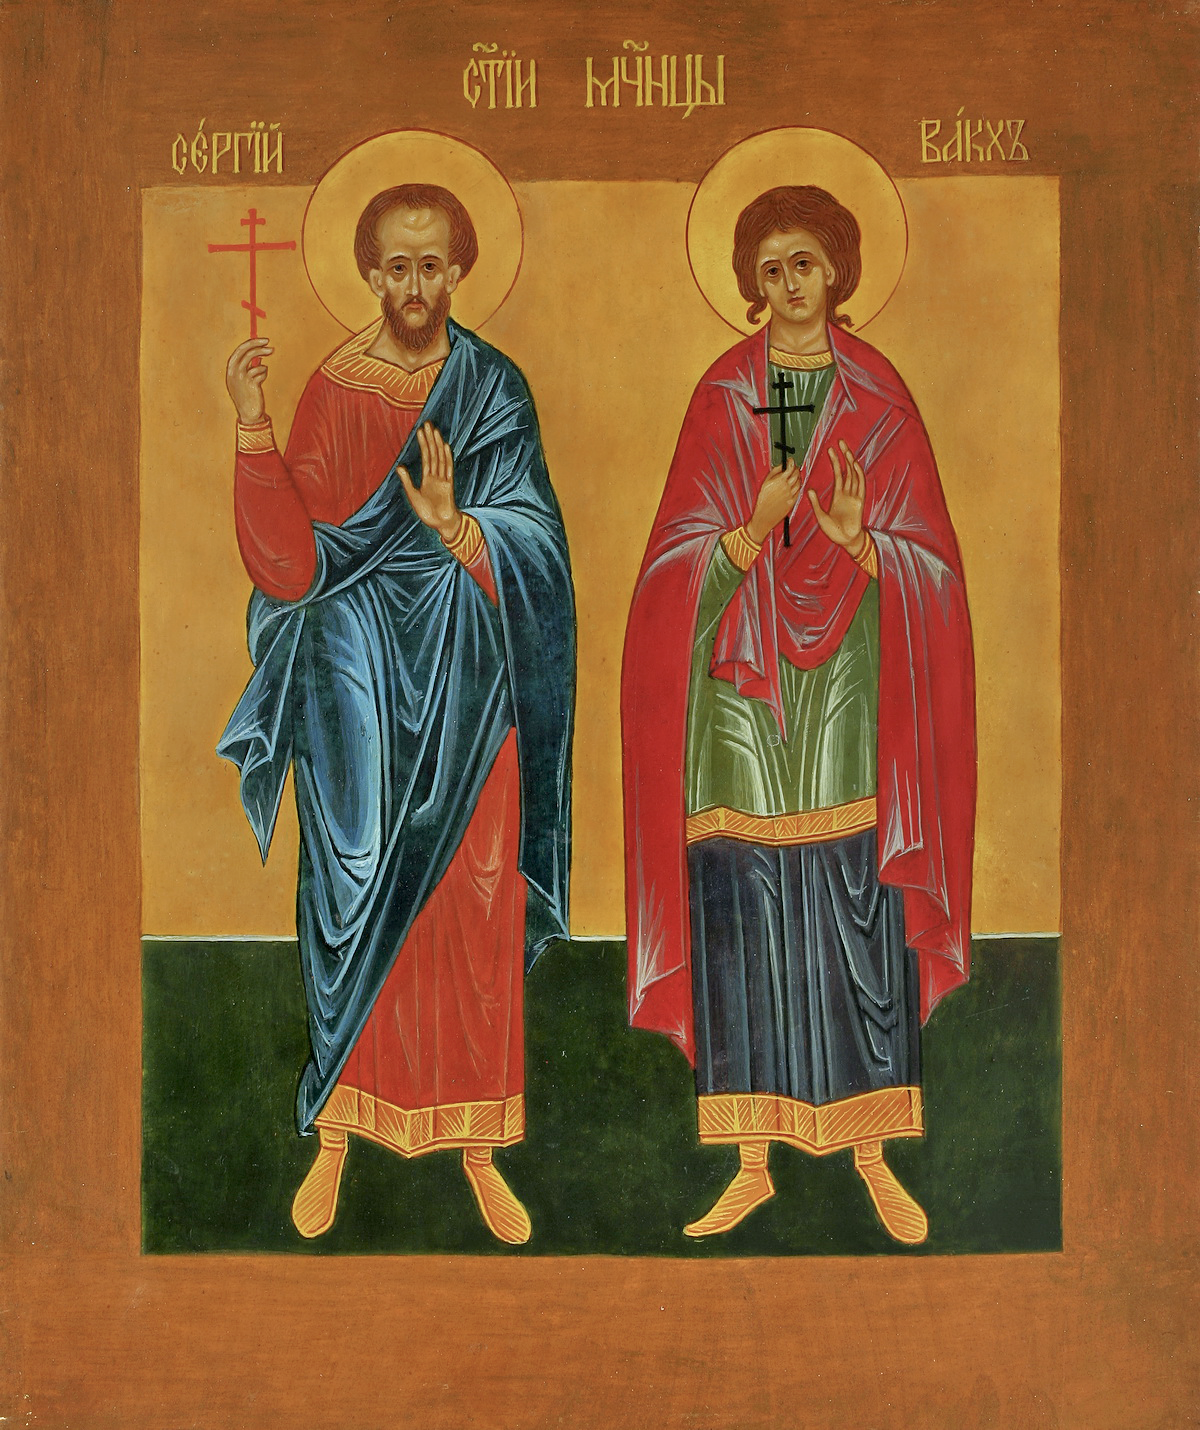 Иконы с двумя святыми. Икона святых мучеников Сергия и Вакха.